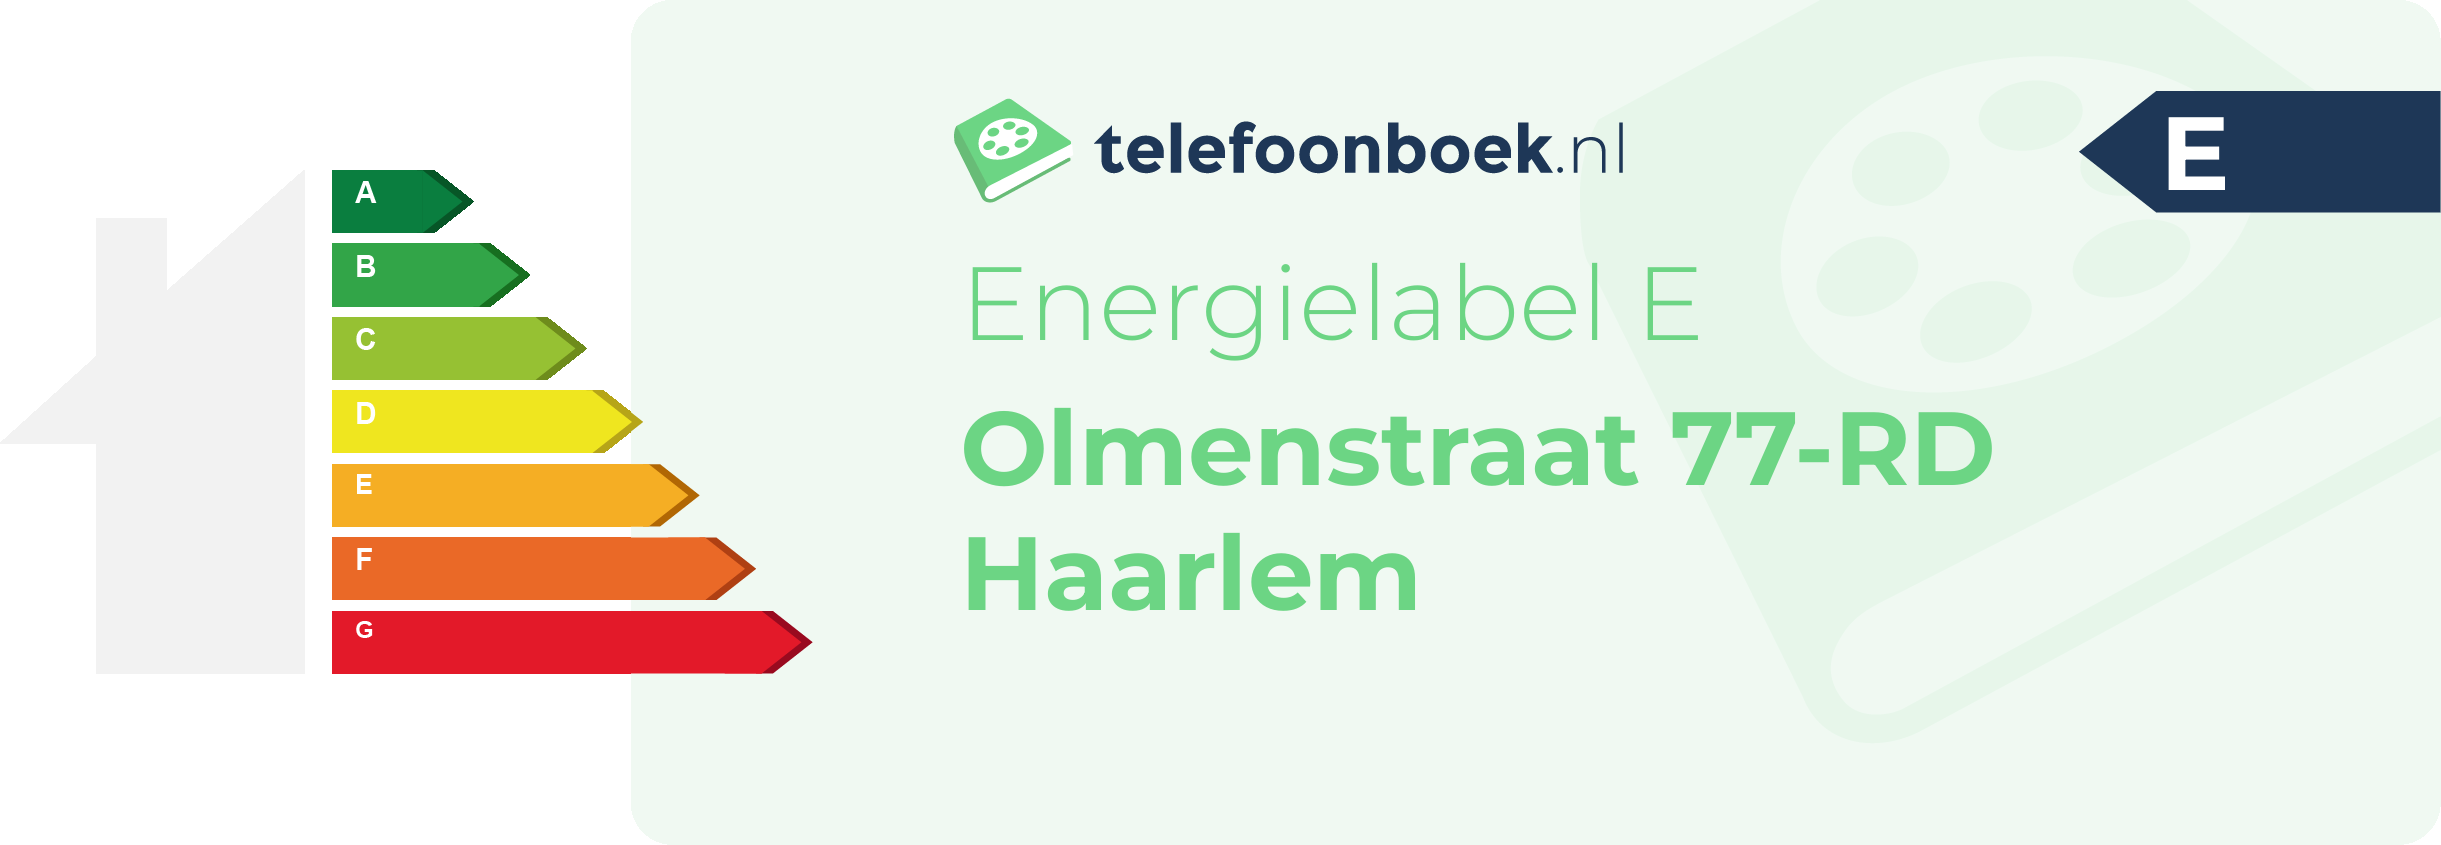 Energielabel Olmenstraat 77-RD Haarlem